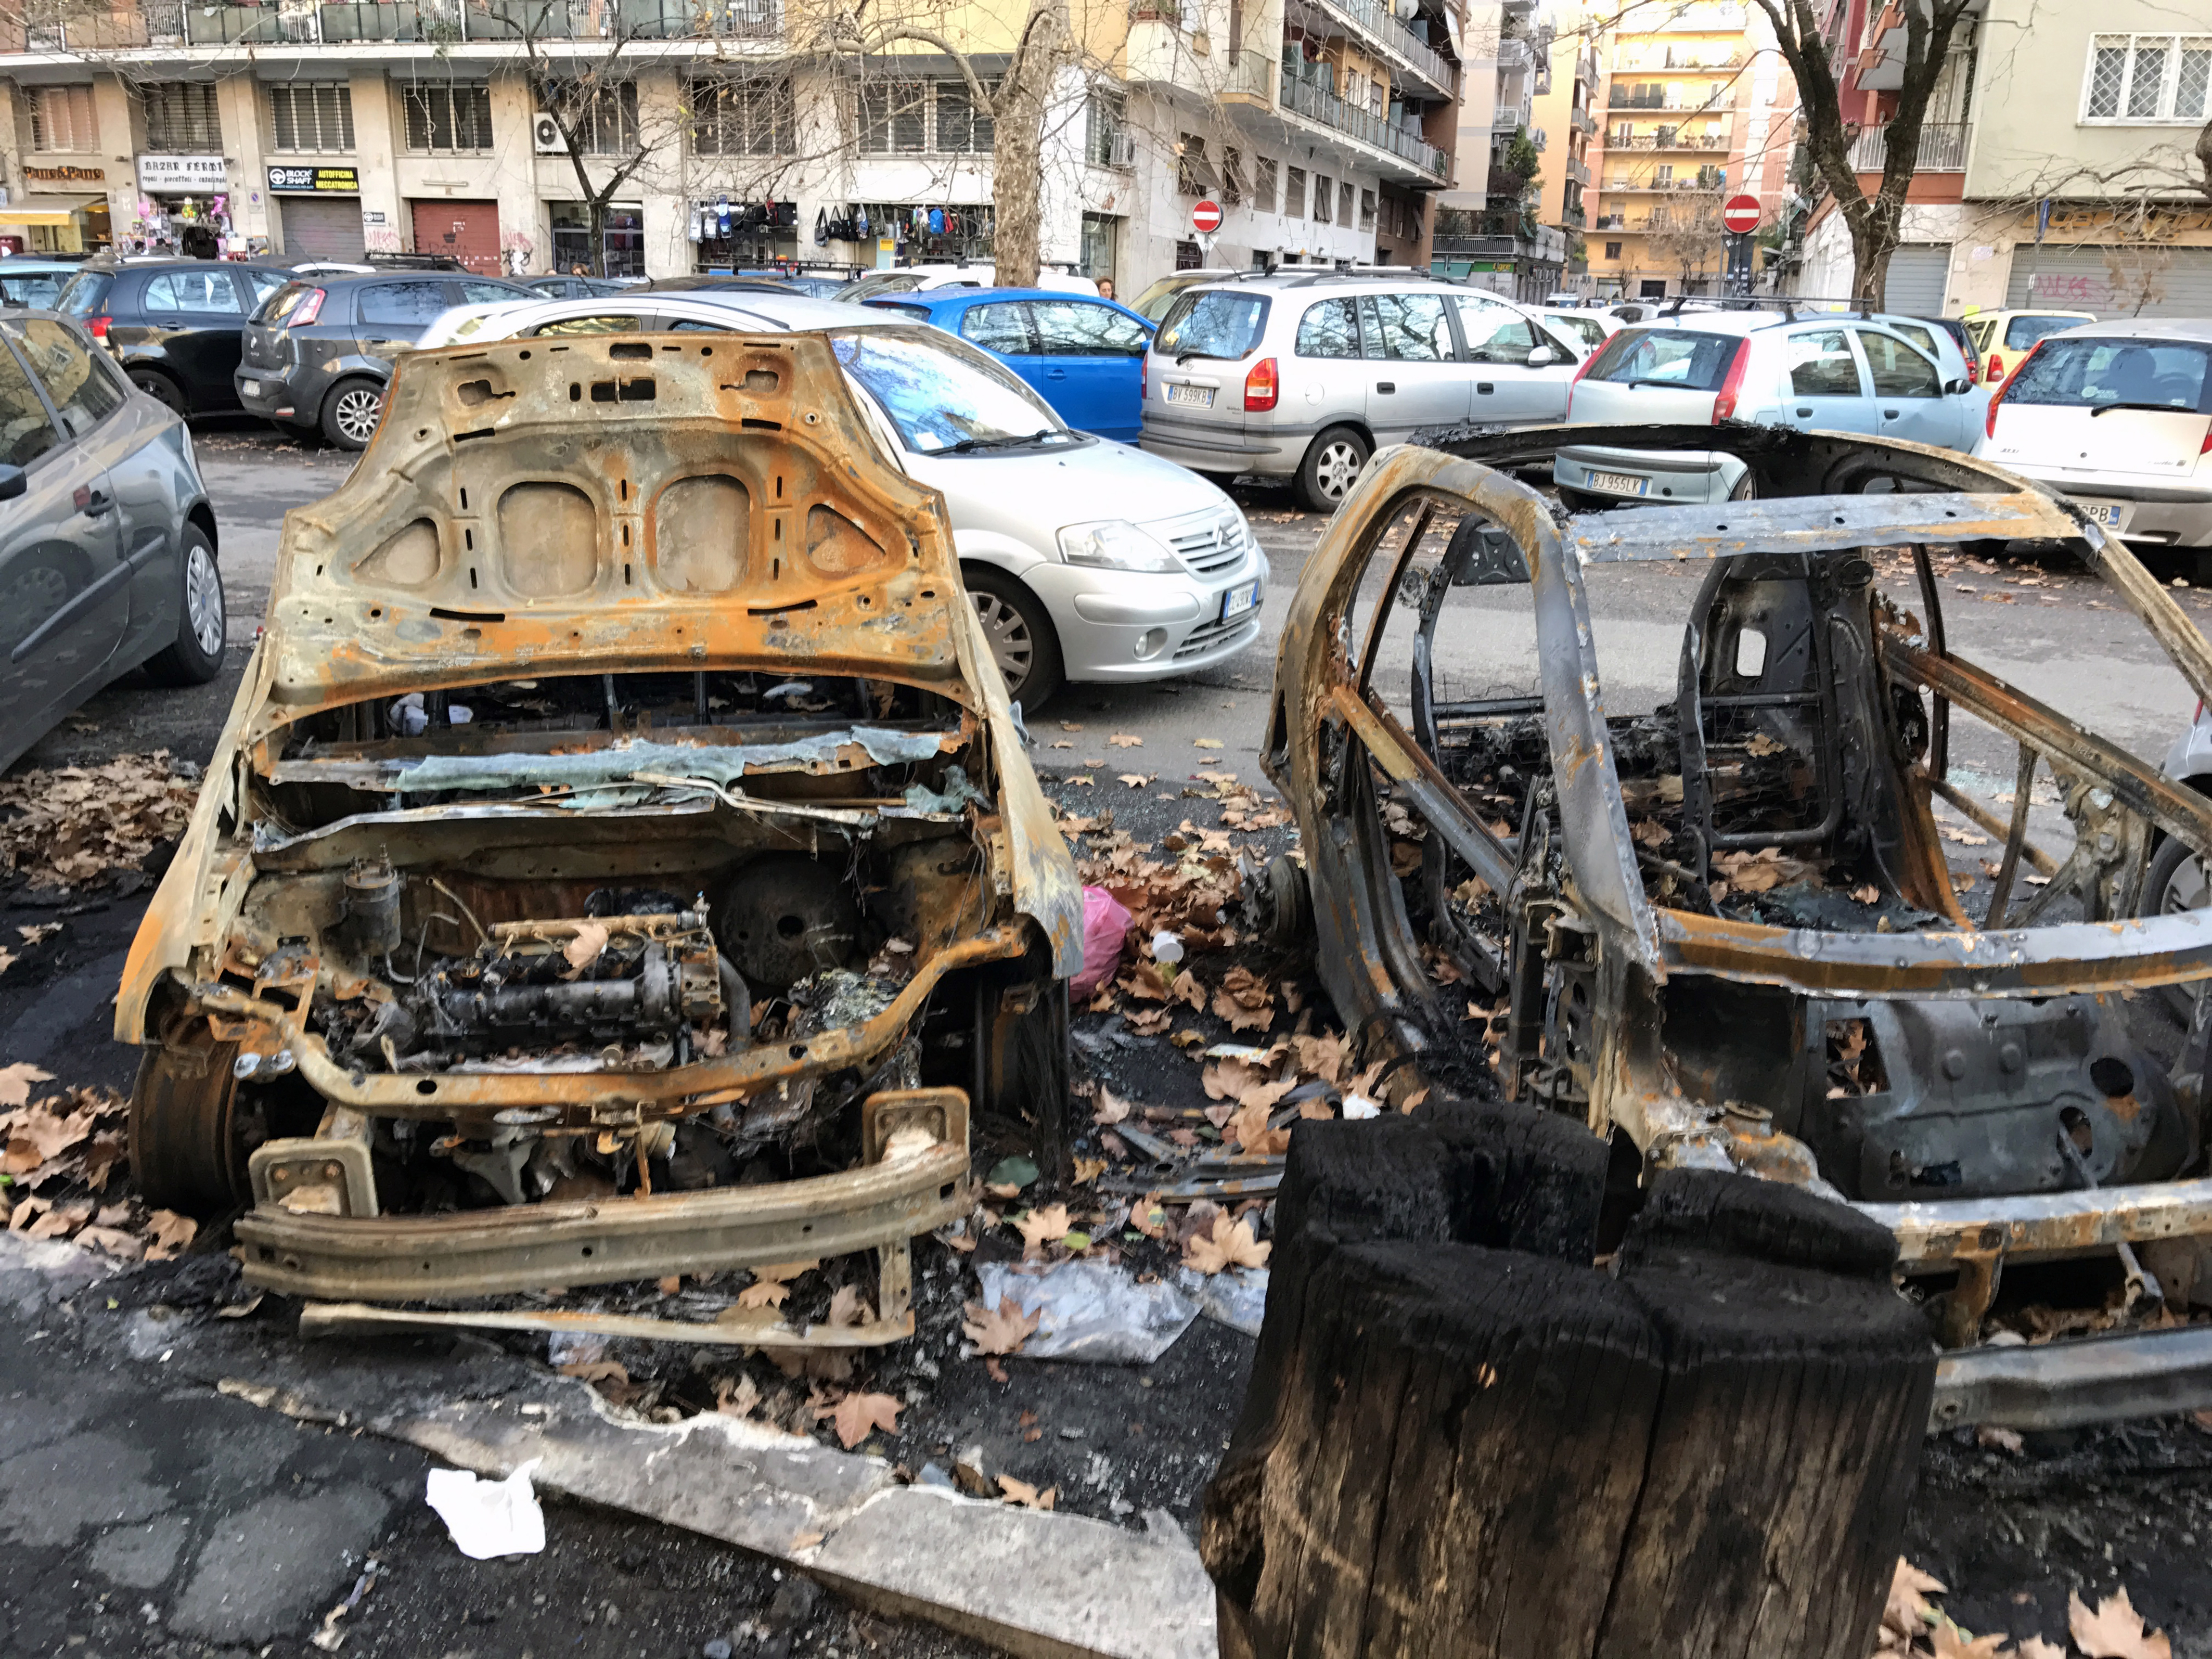 Via Fermi, 41. Carcasse delle auto bruciate nella notte di Capodanno 2017